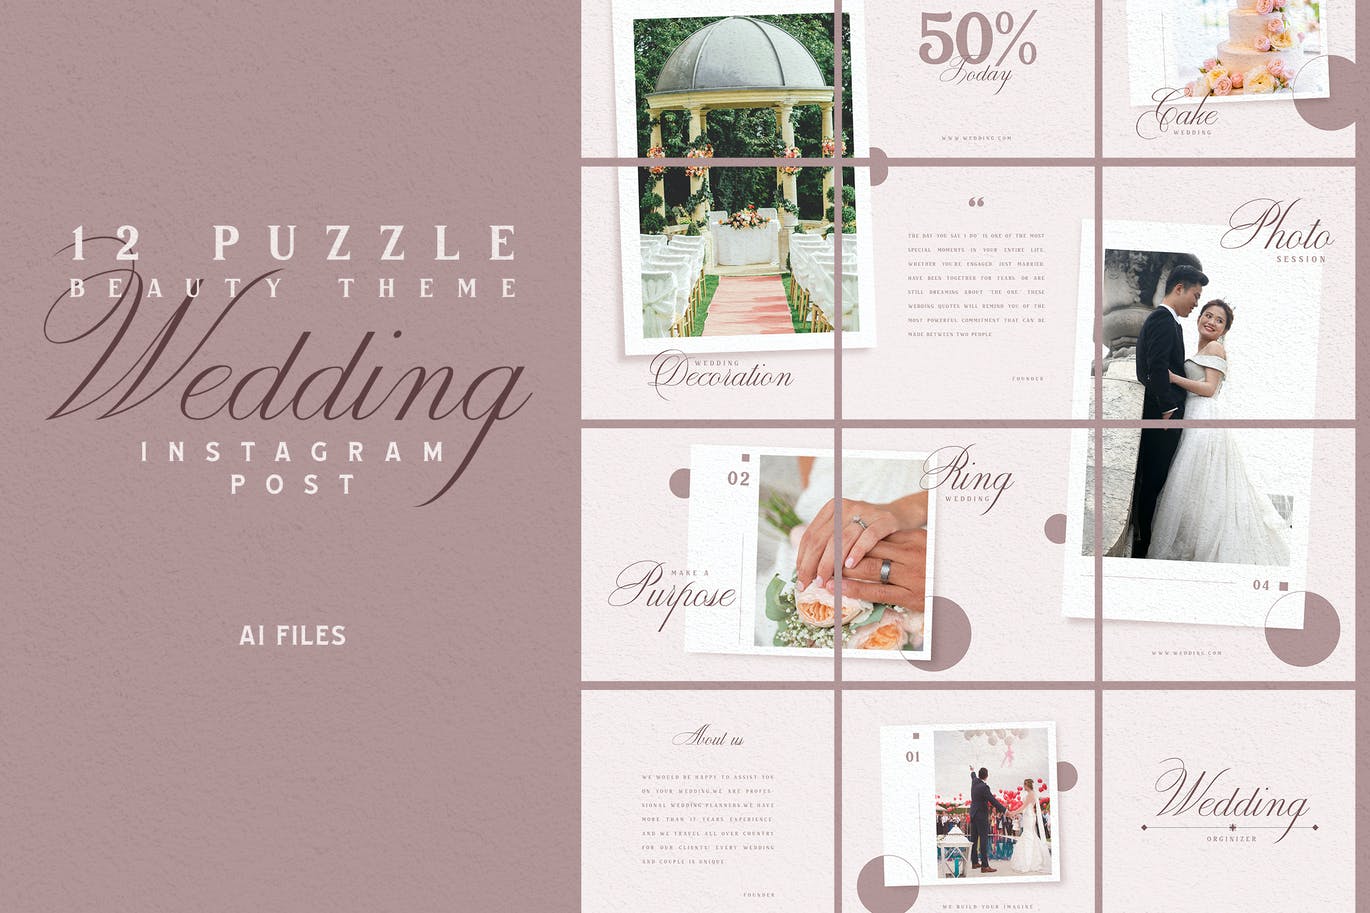 拼图风格浪漫婚礼Instagram帖子社交媒体贴图素材 Beauty Puzzle Theme – Wedding Instagram Post设计素材模板